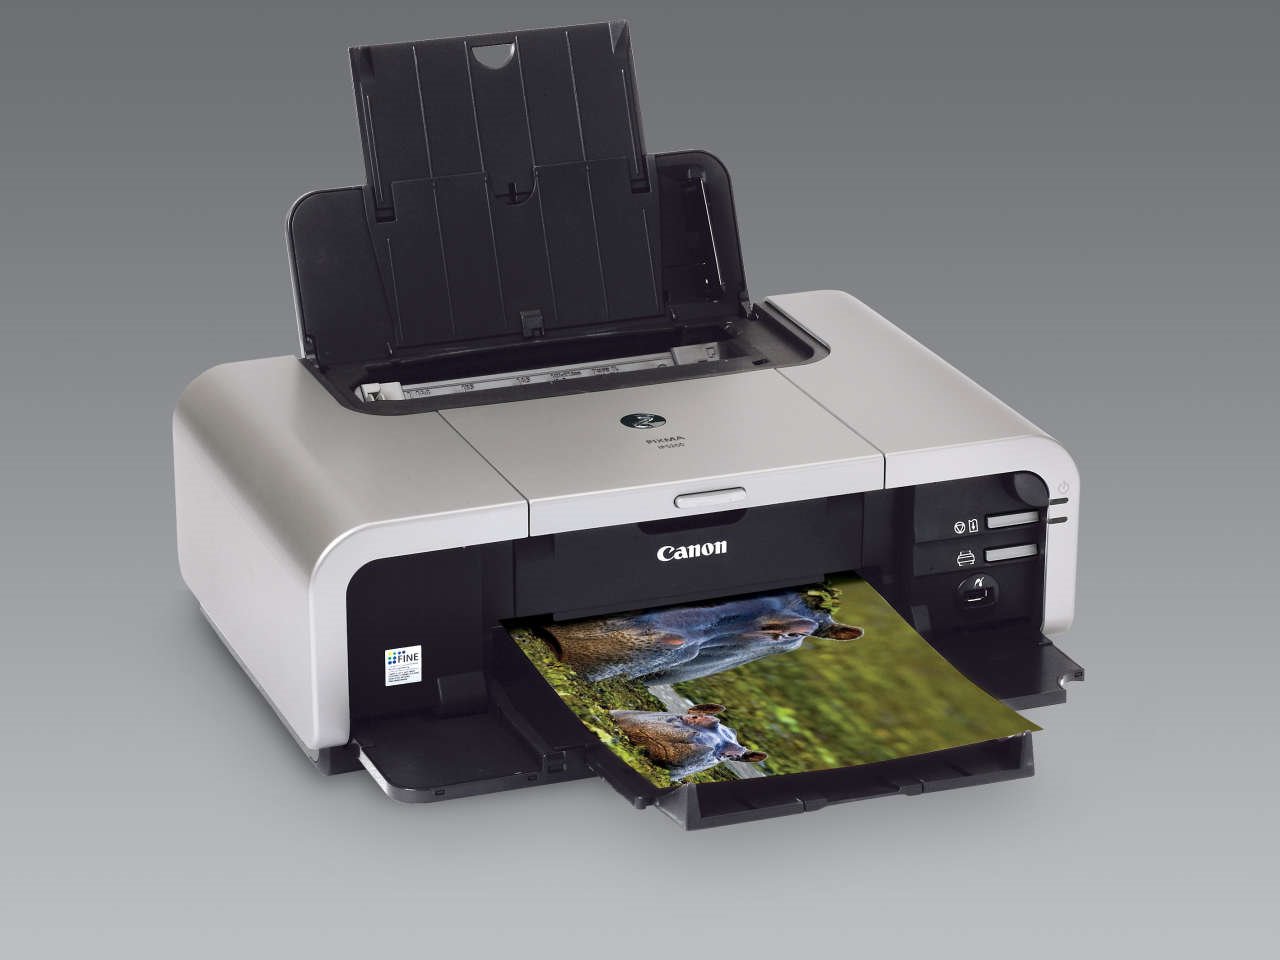 canon mp490 printer paper